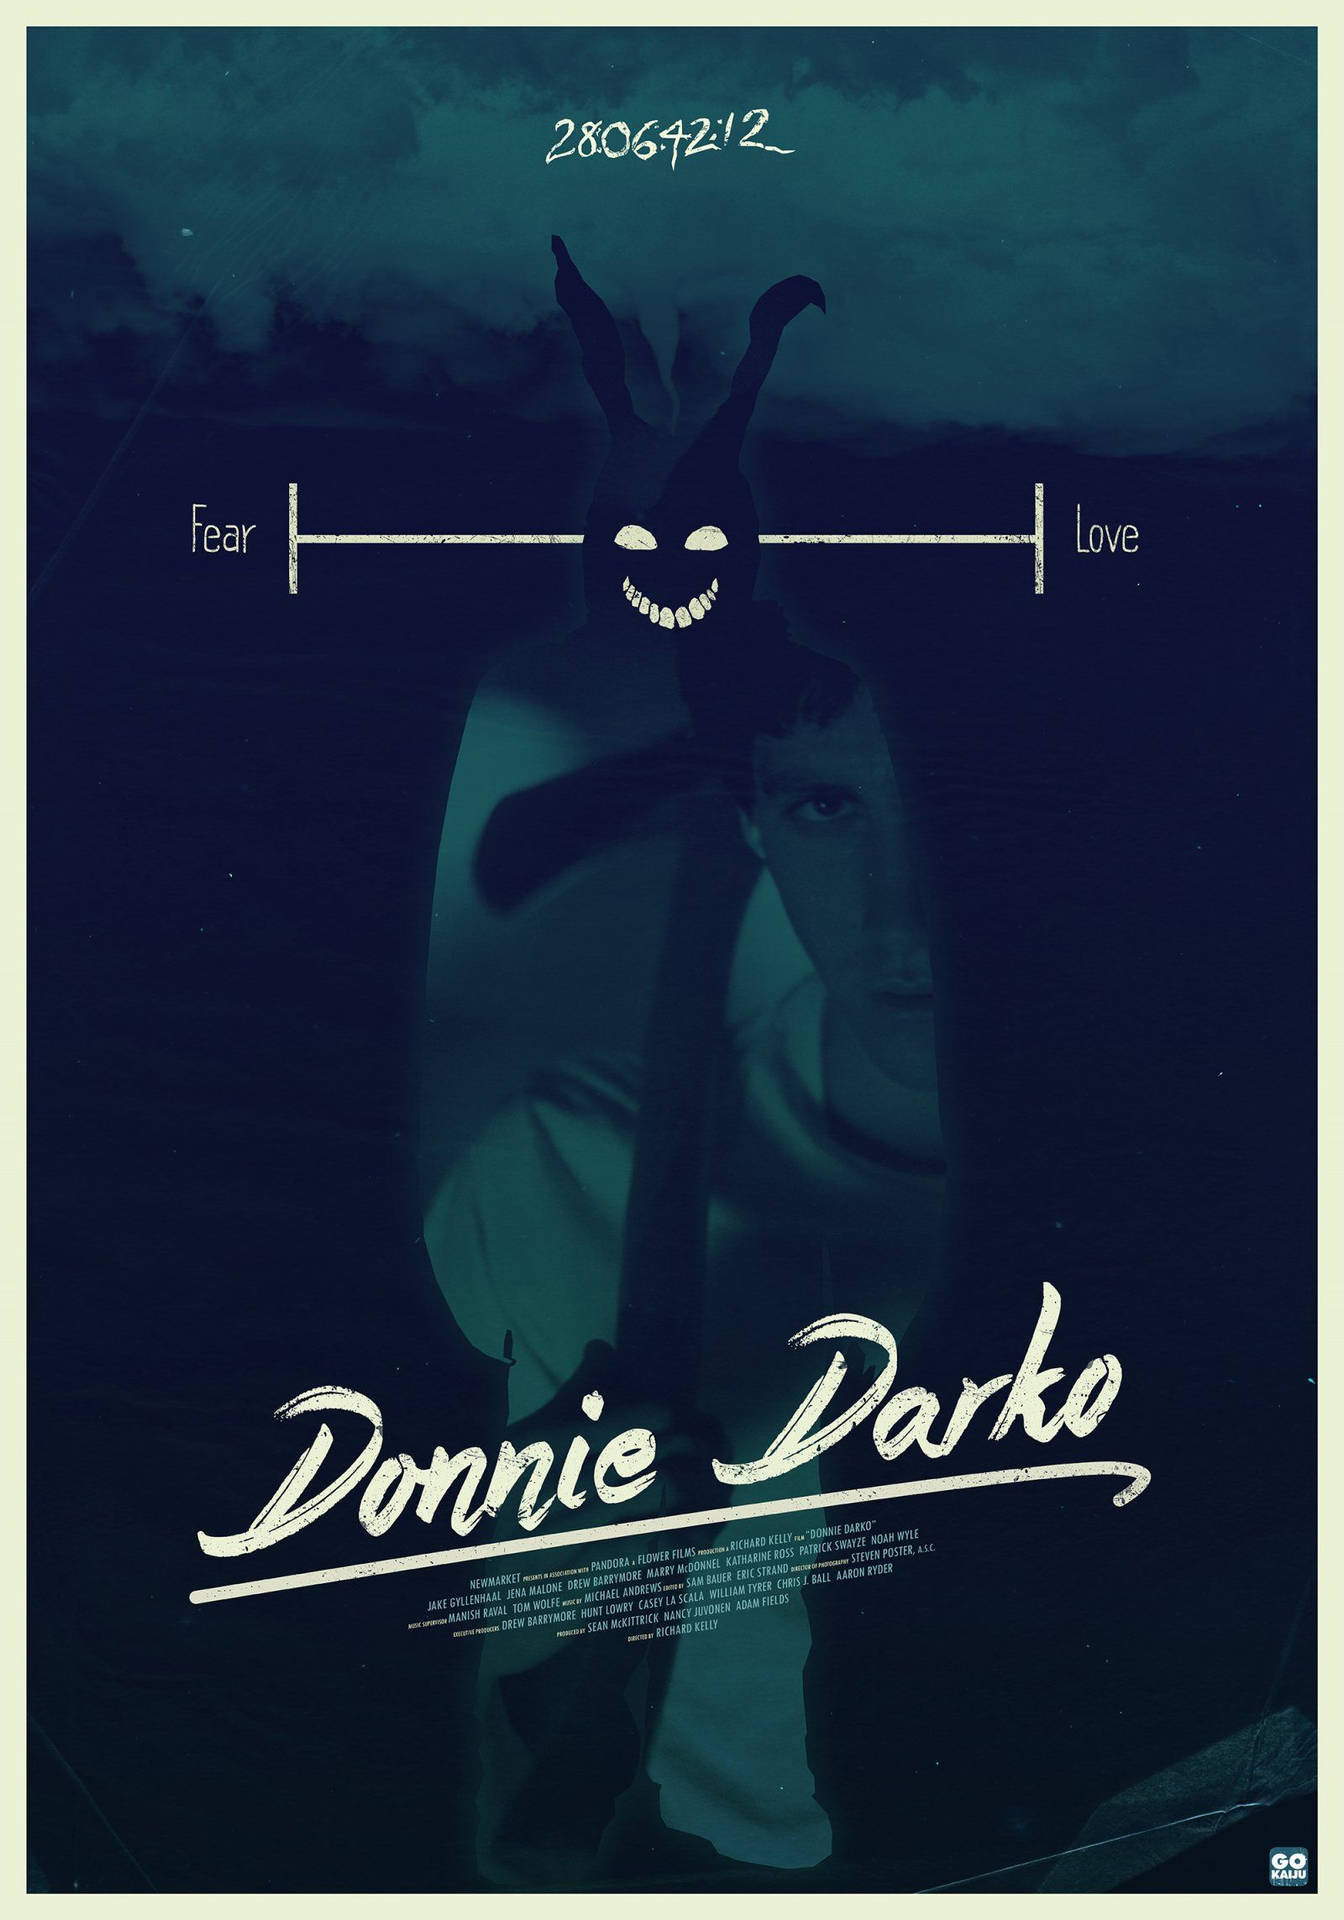 Free Donnie Darko Wallpaper Downloads, [100+] Donnie Darko Wallpapers for  FREE 